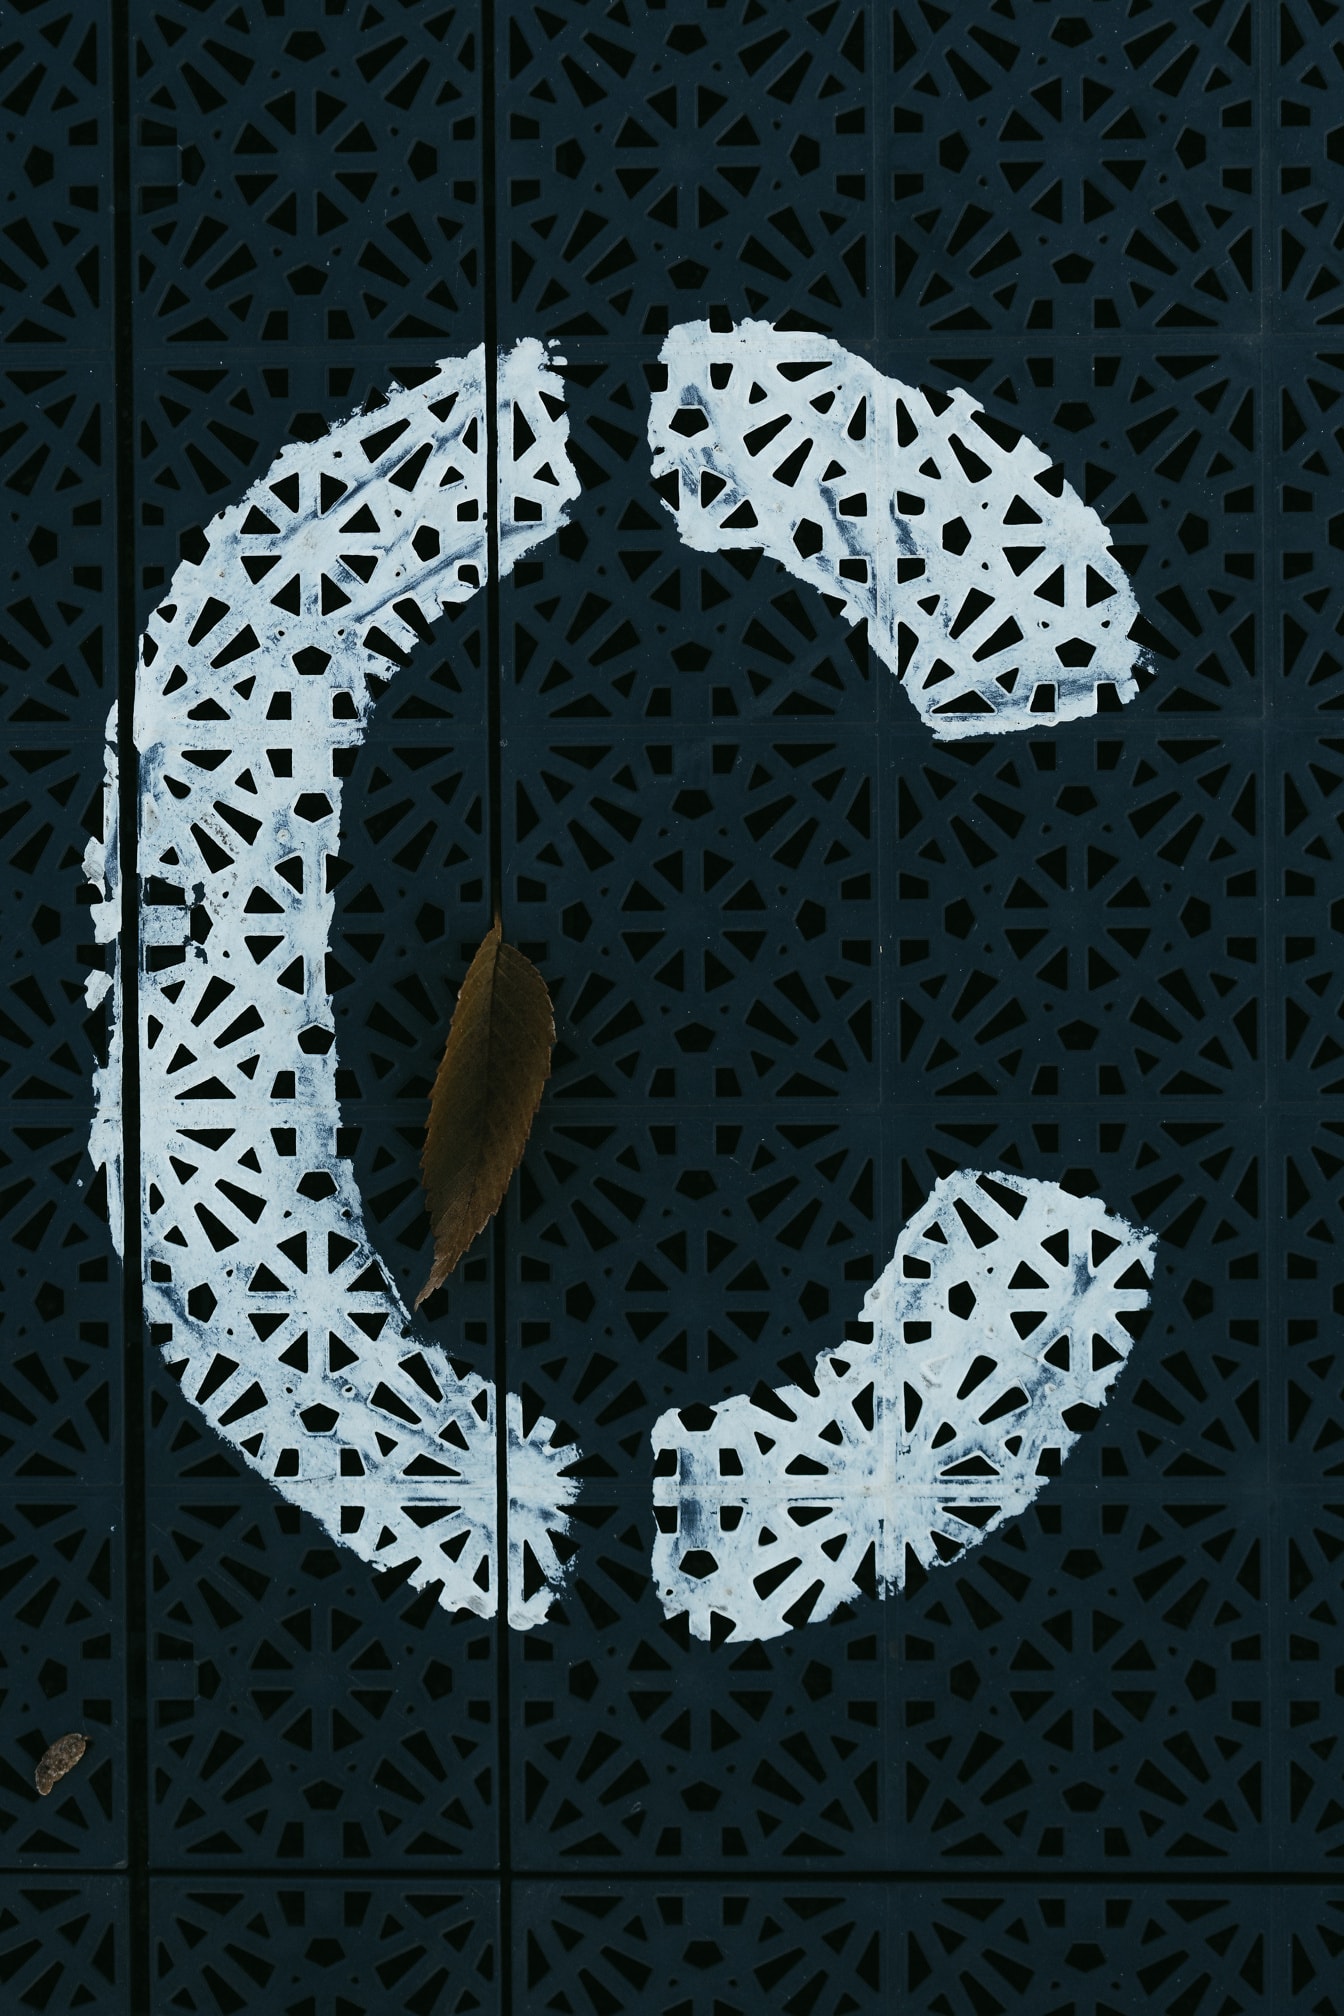 Letrero blanco (C) sobre plástico oscuro con patrón geométrico